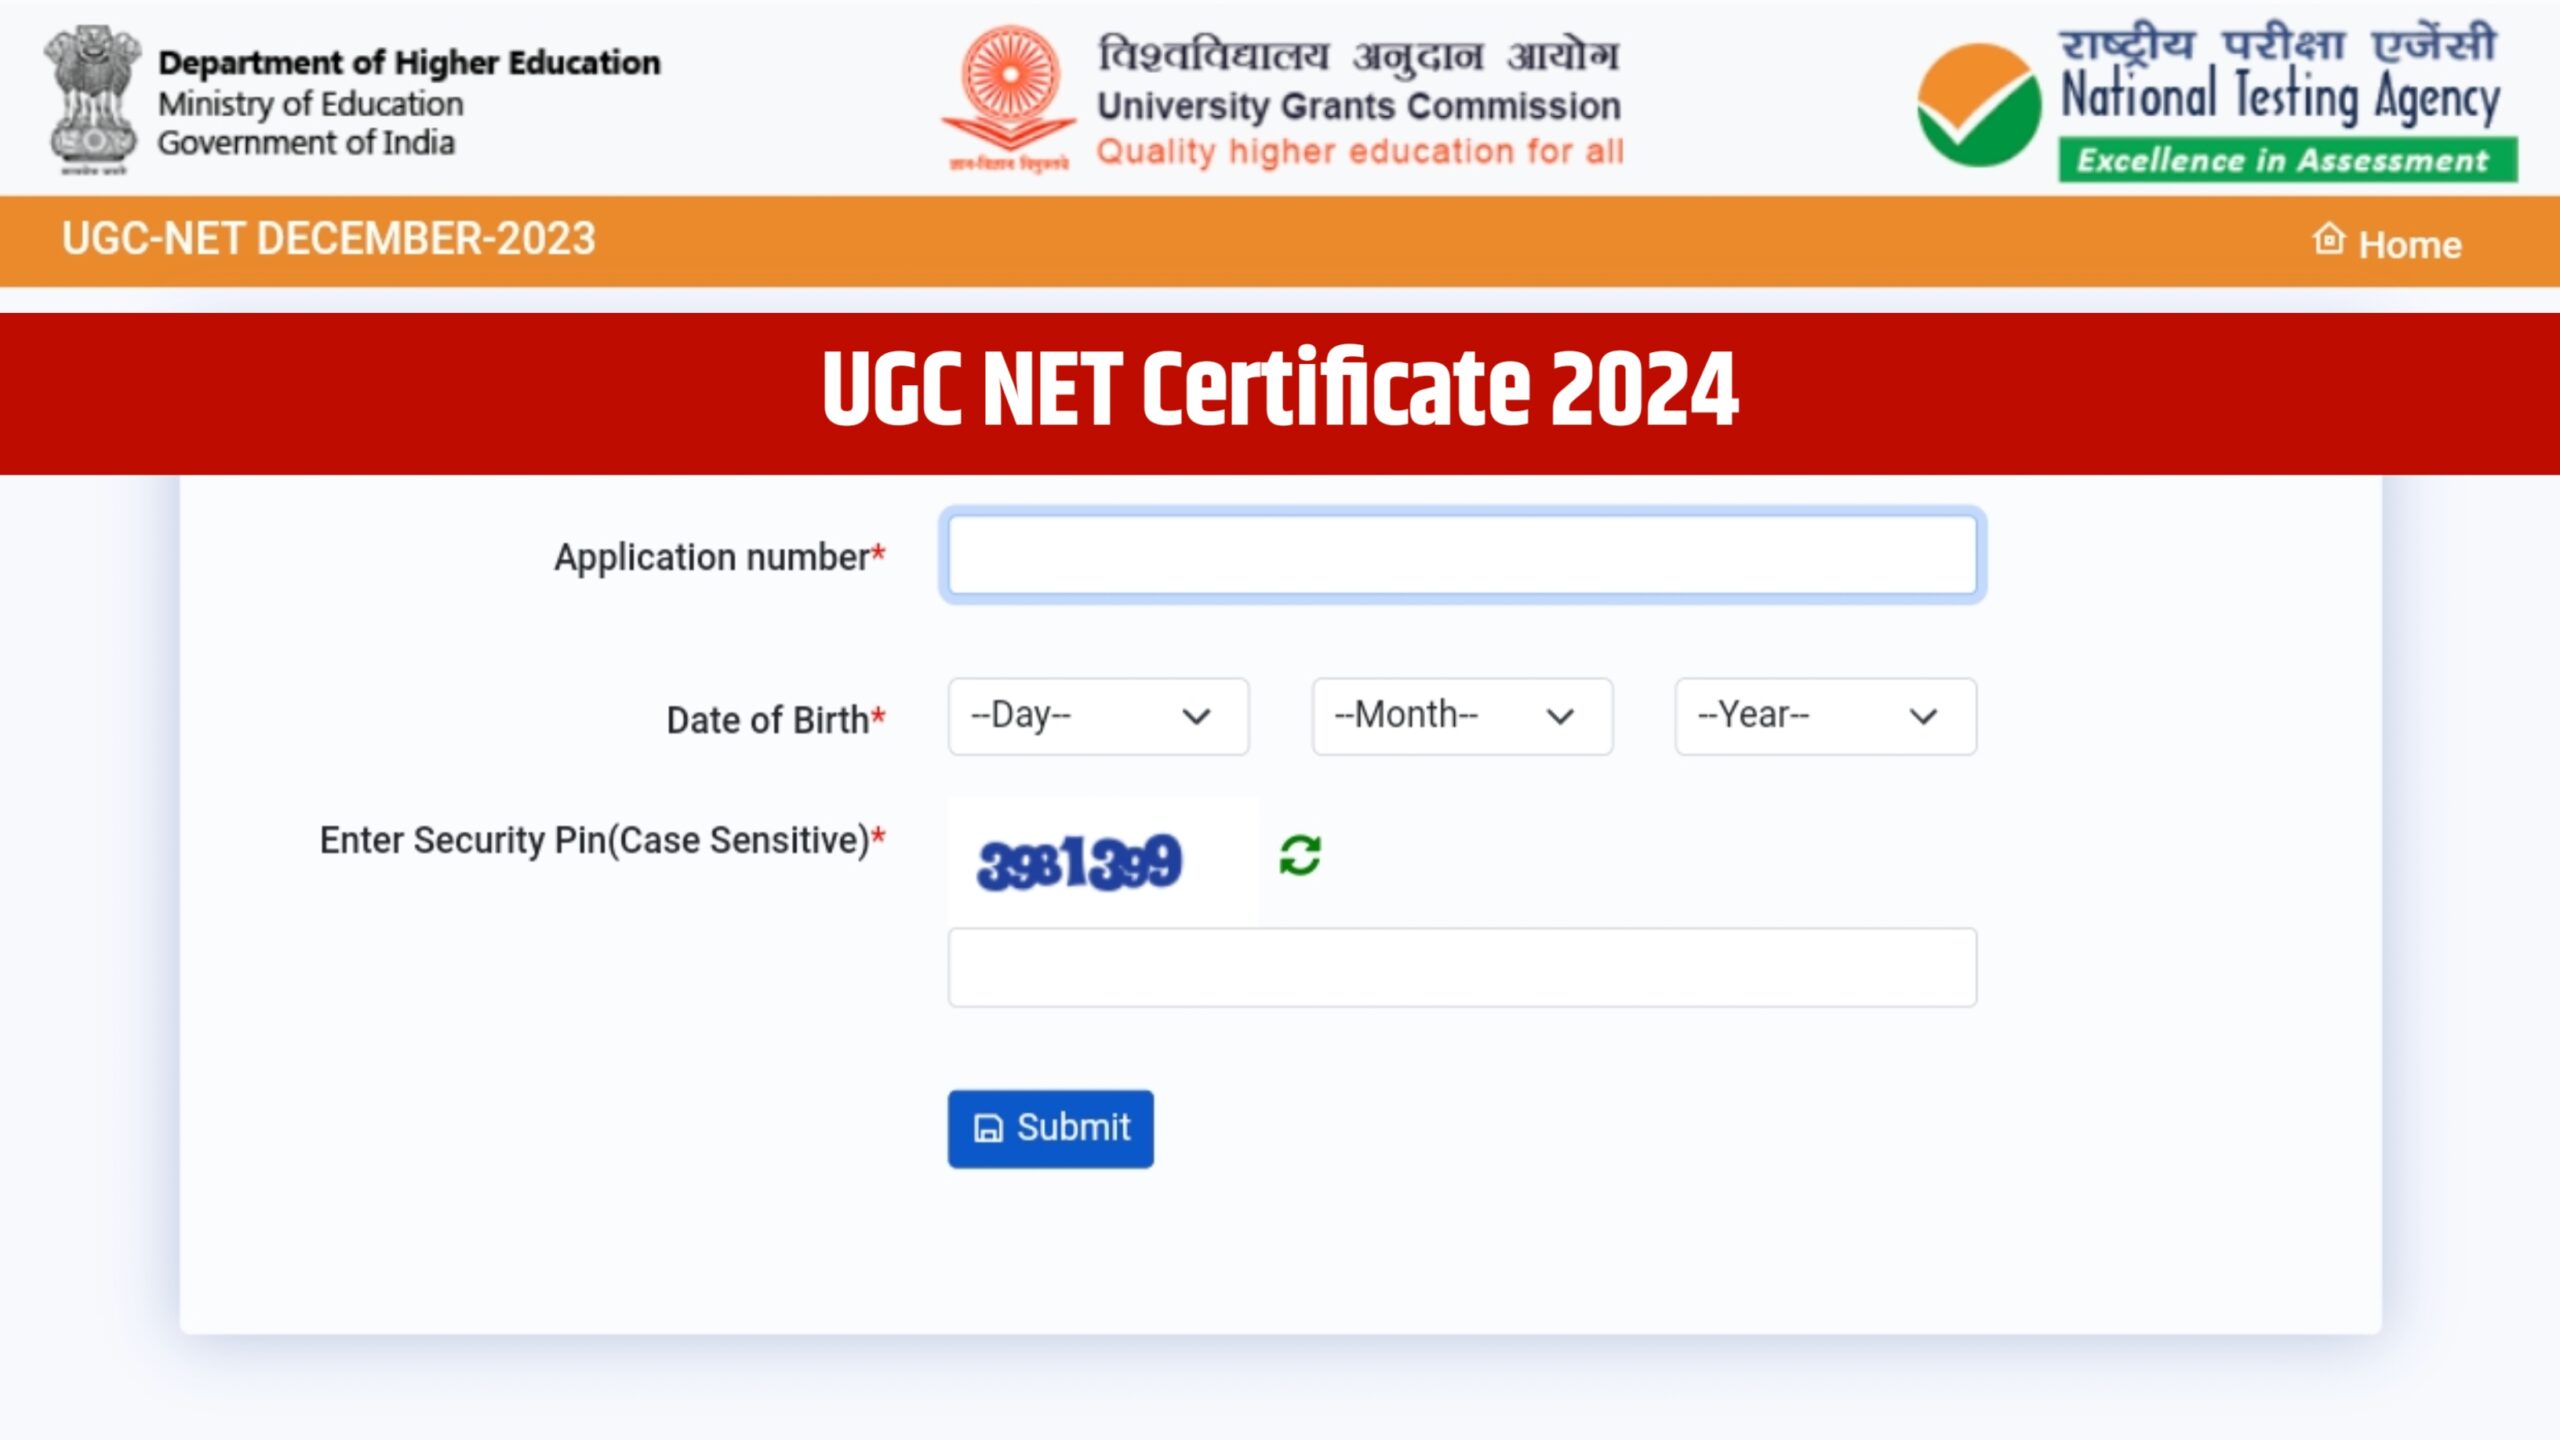 UGC NET Certificate 2024